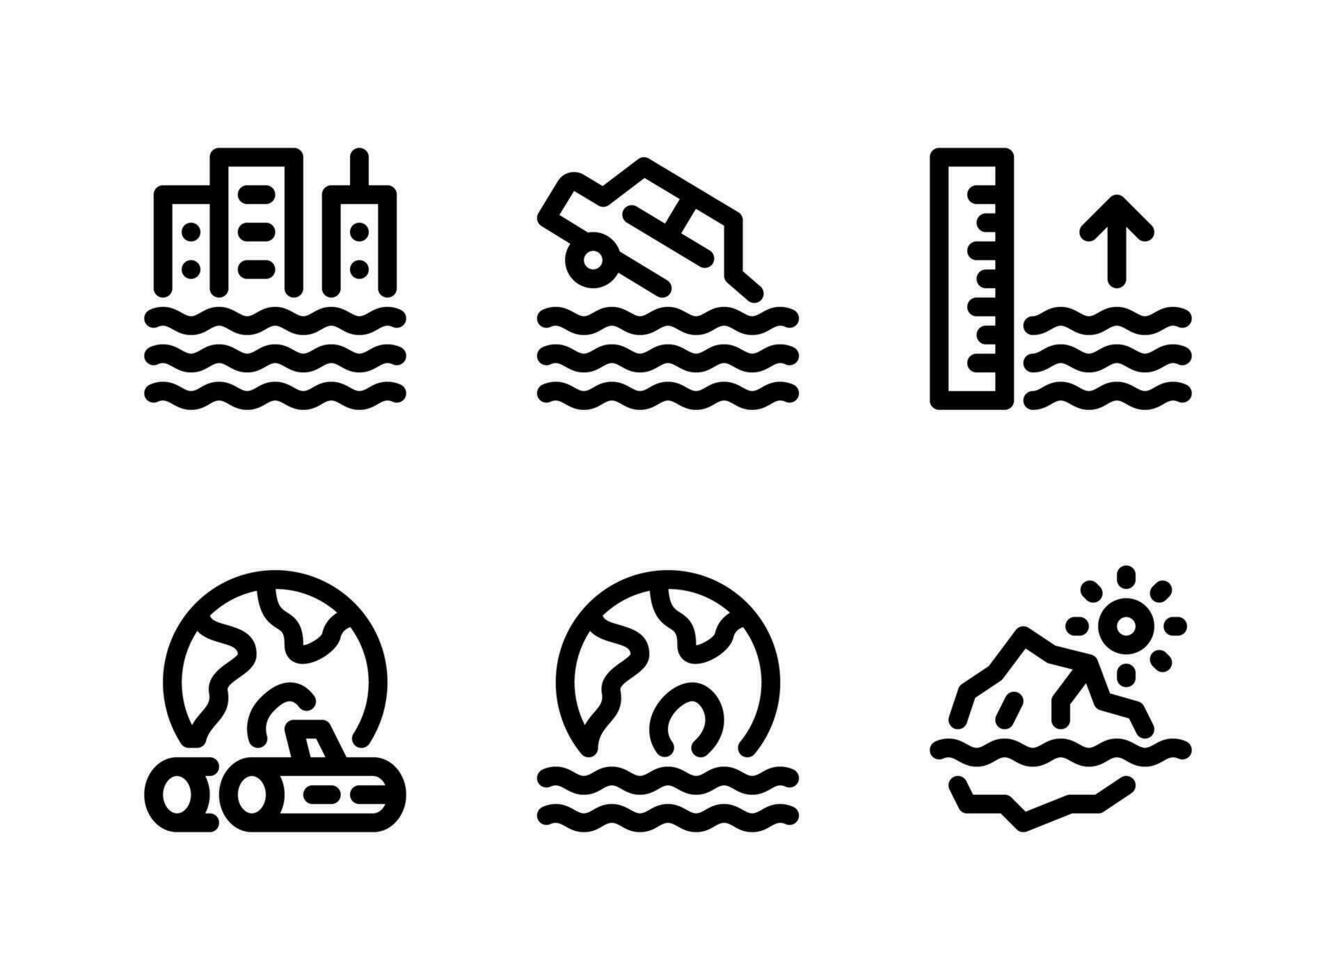 semplice set di icone di linee vettoriali relative ai cambiamenti climatici. contiene icone come inondazione in città, auto in piena, livello del mare e altro ancora.